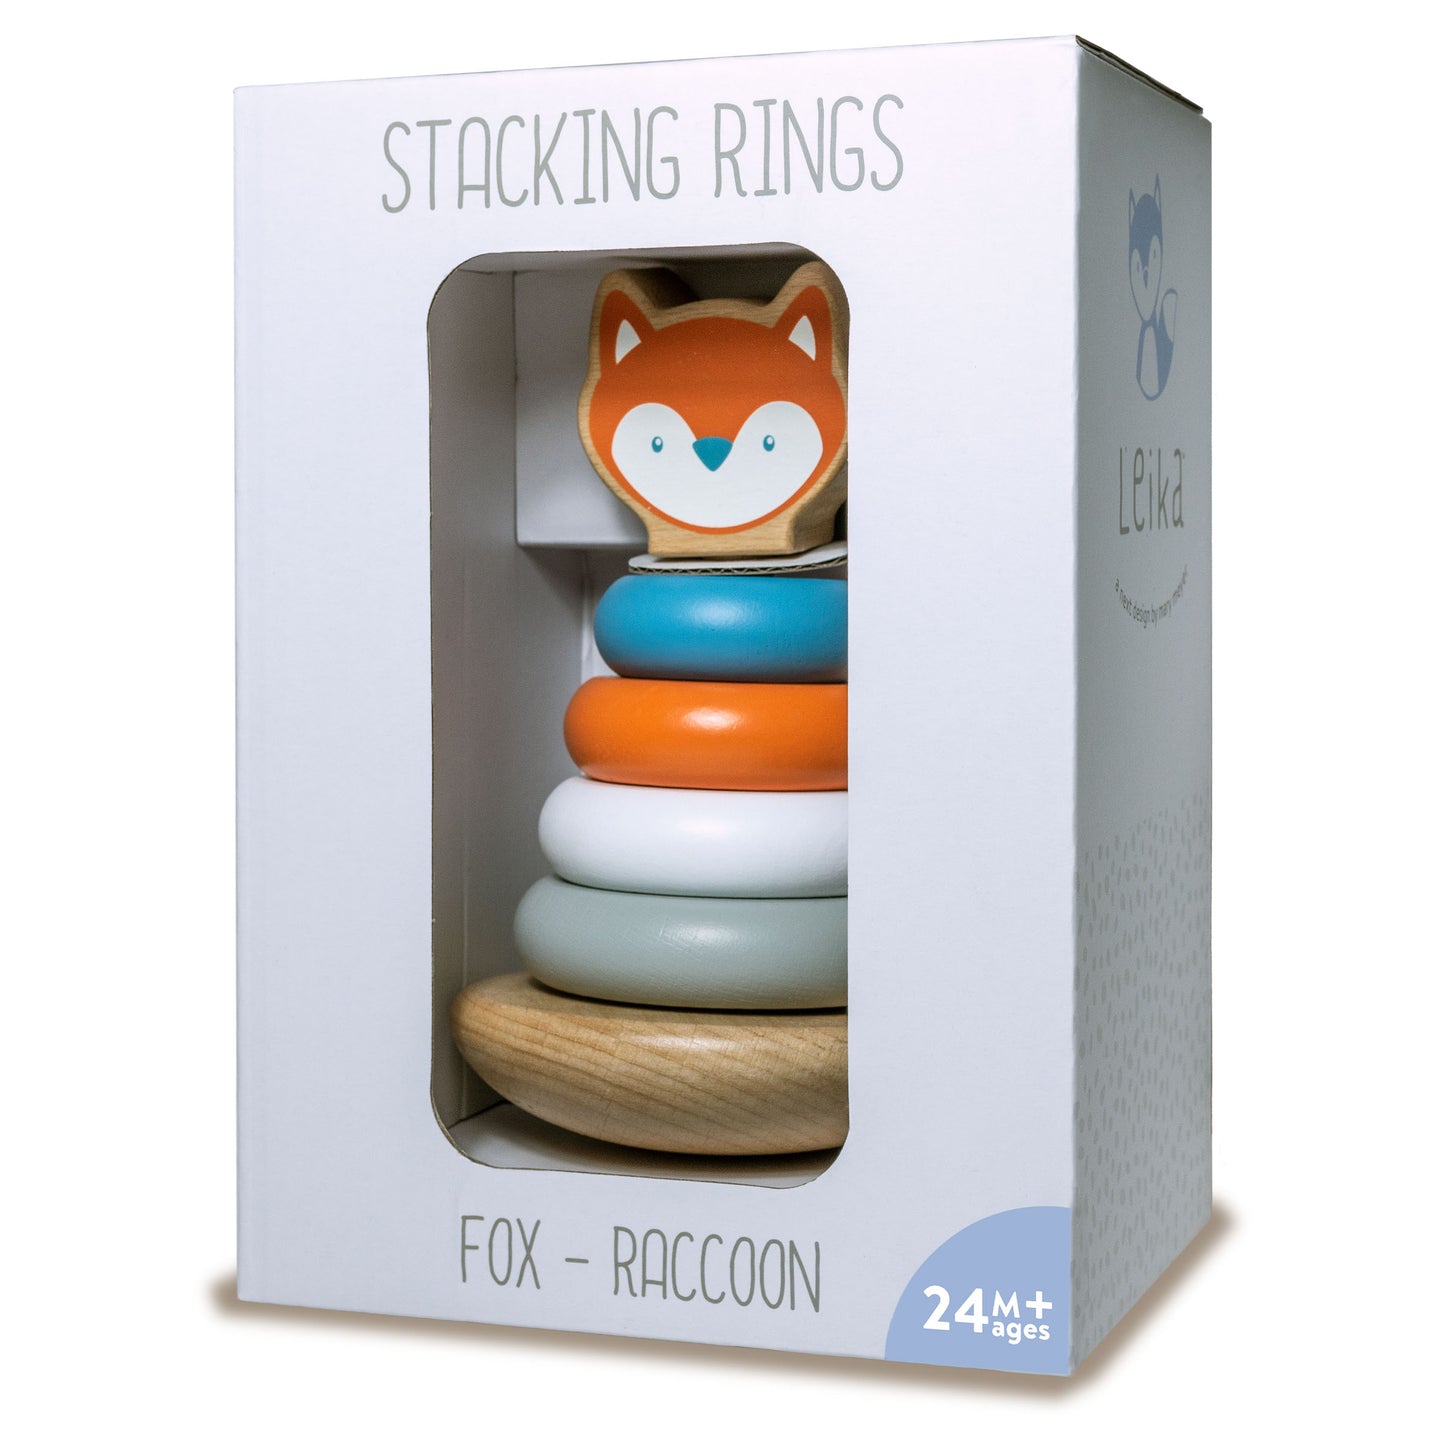 Leika Wooden Stacking Rings